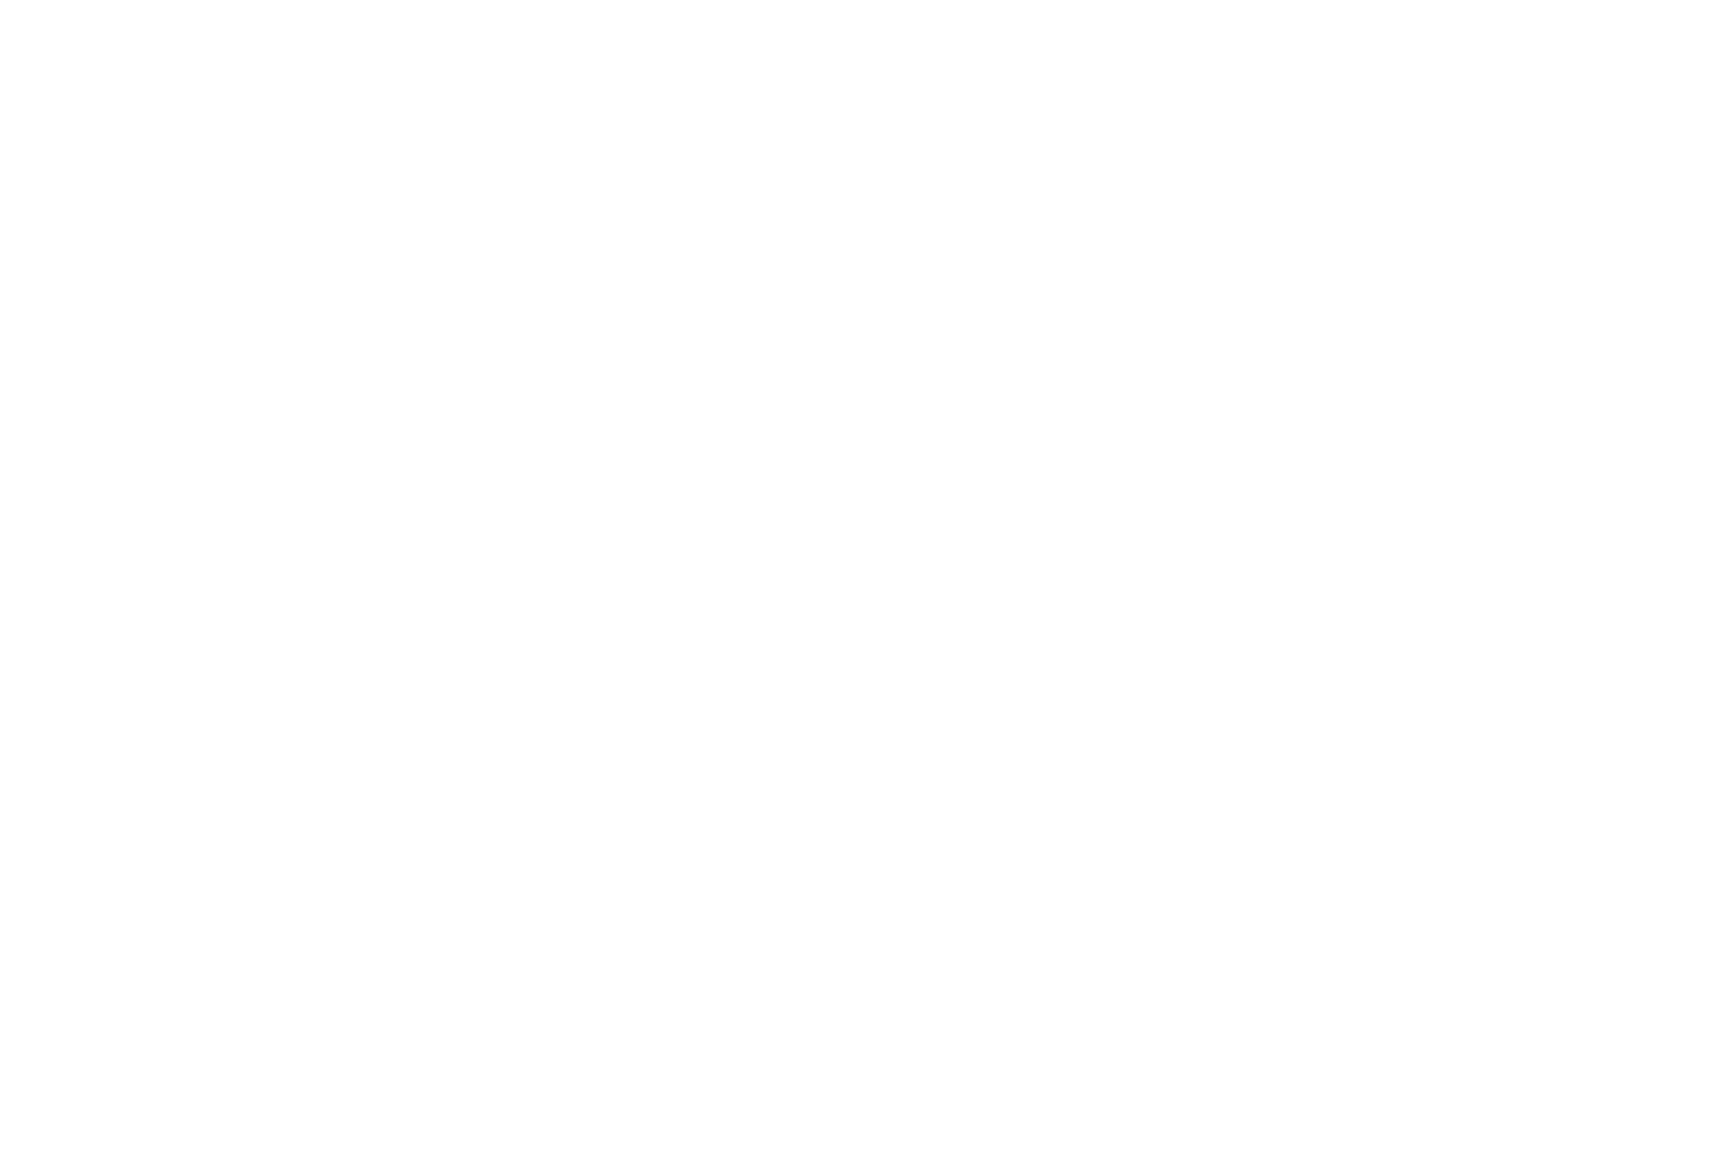 WINNER AUDIENCE AWARD - NASHVILLE FILM FESTIVAL - 2023